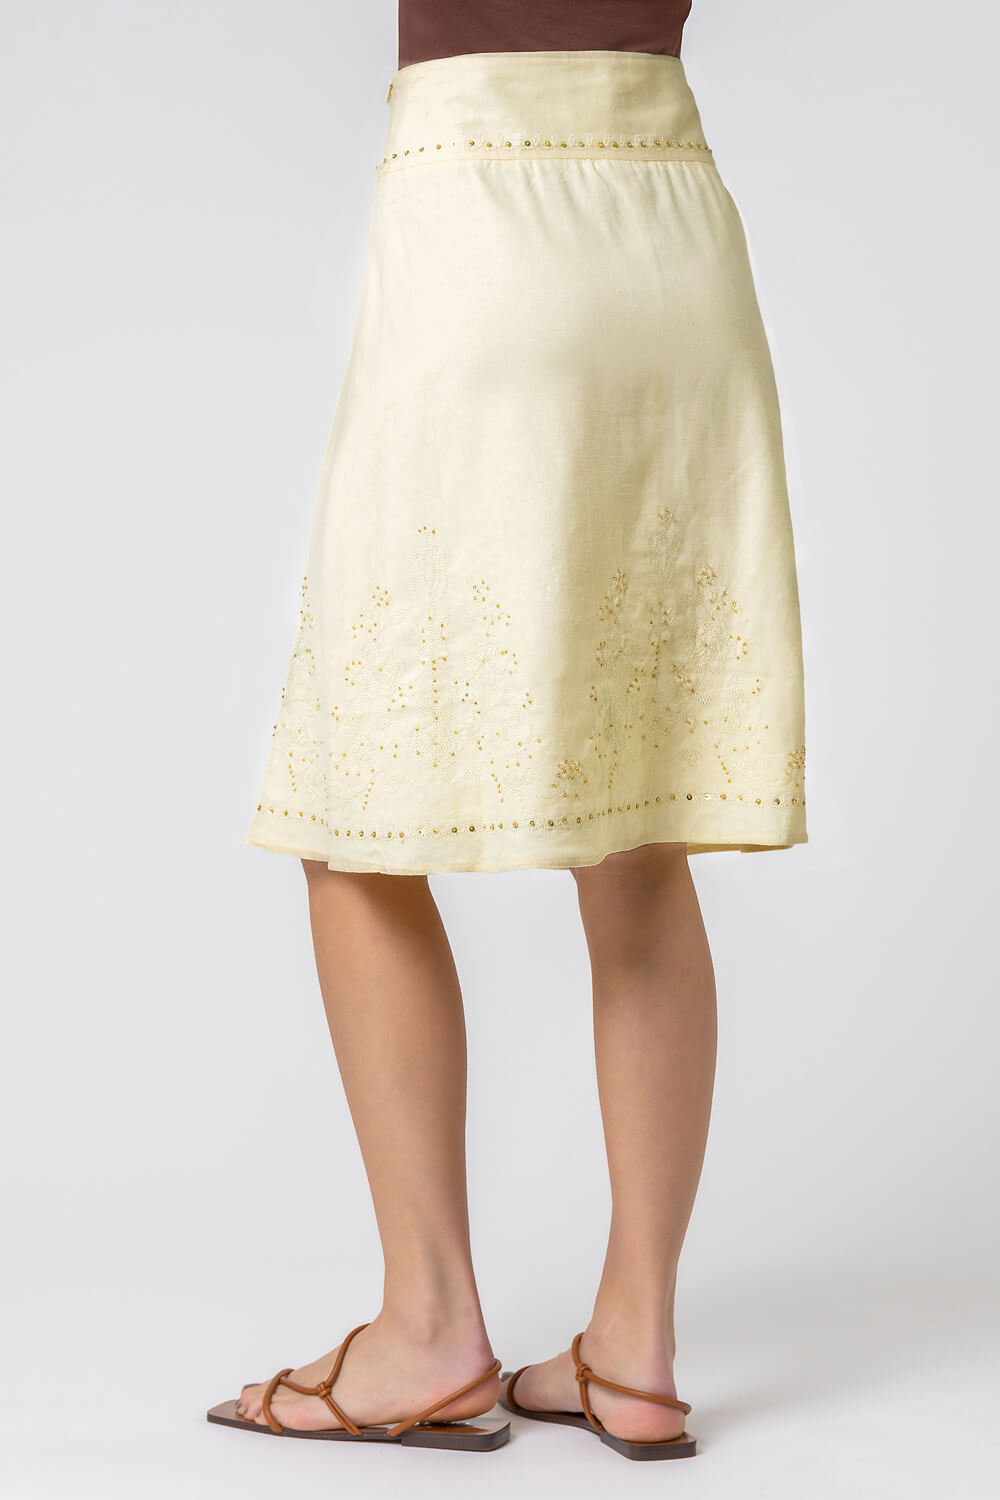 Lemon  Sequin Embellished A-Line Skirt, Image 2 of 4